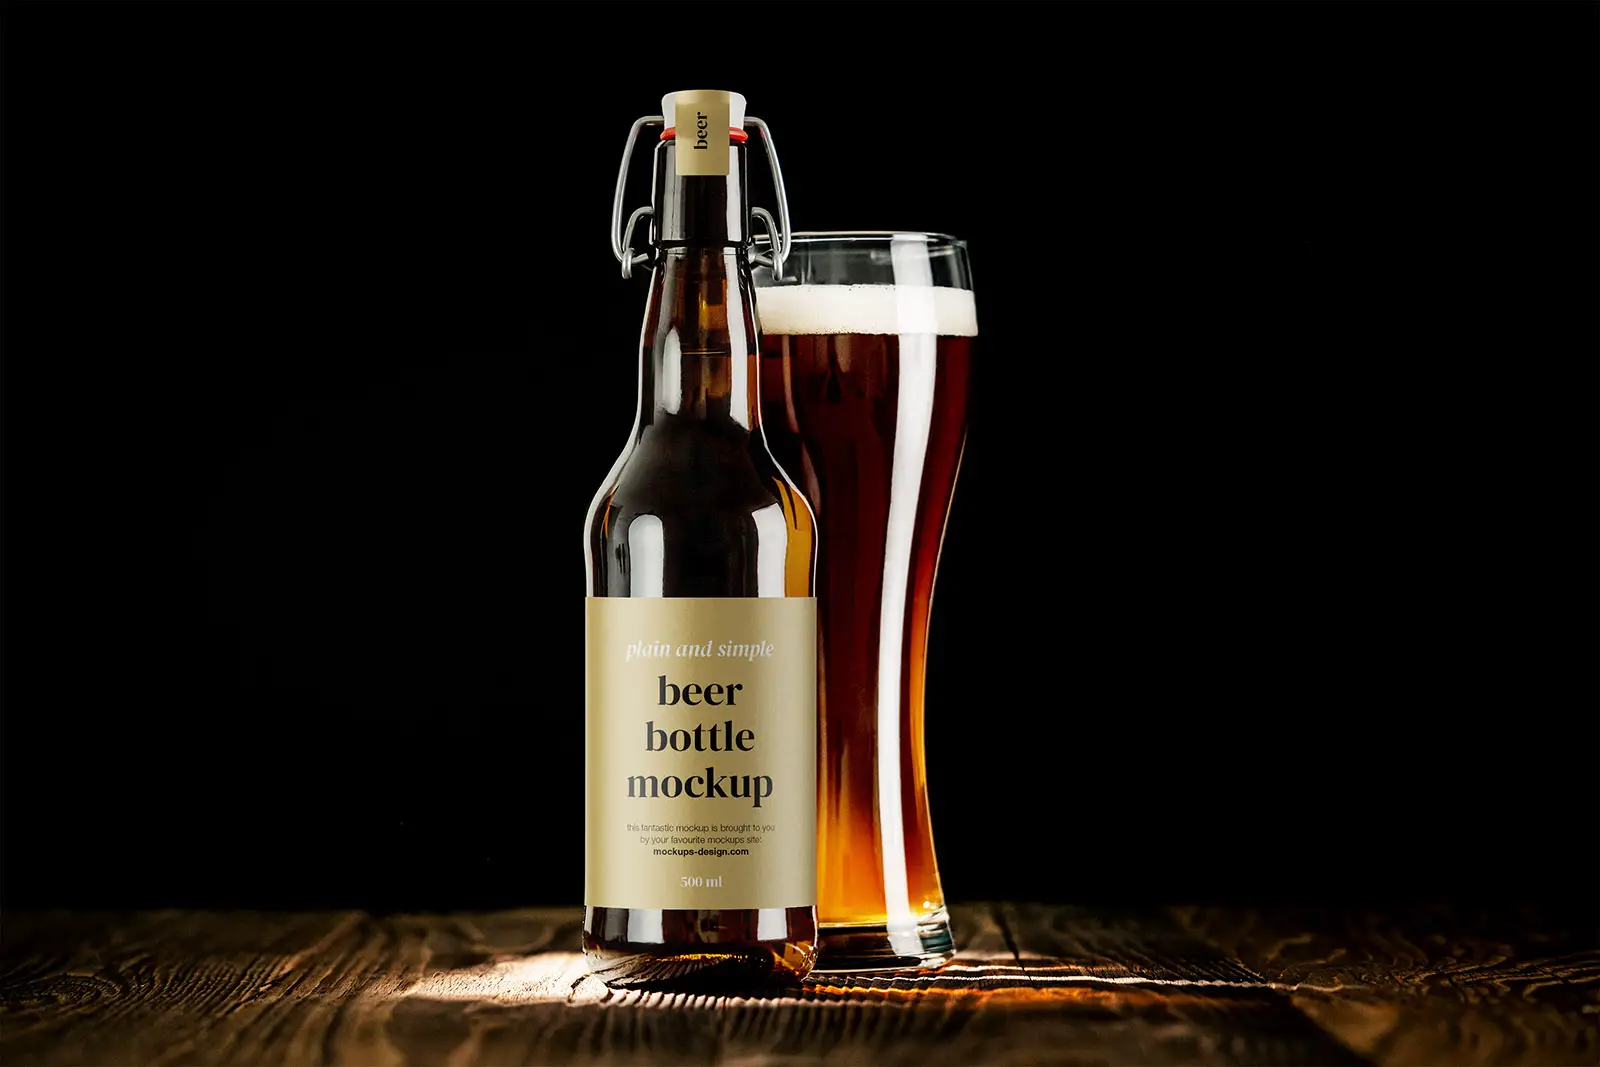 Beer bottle mockup - 